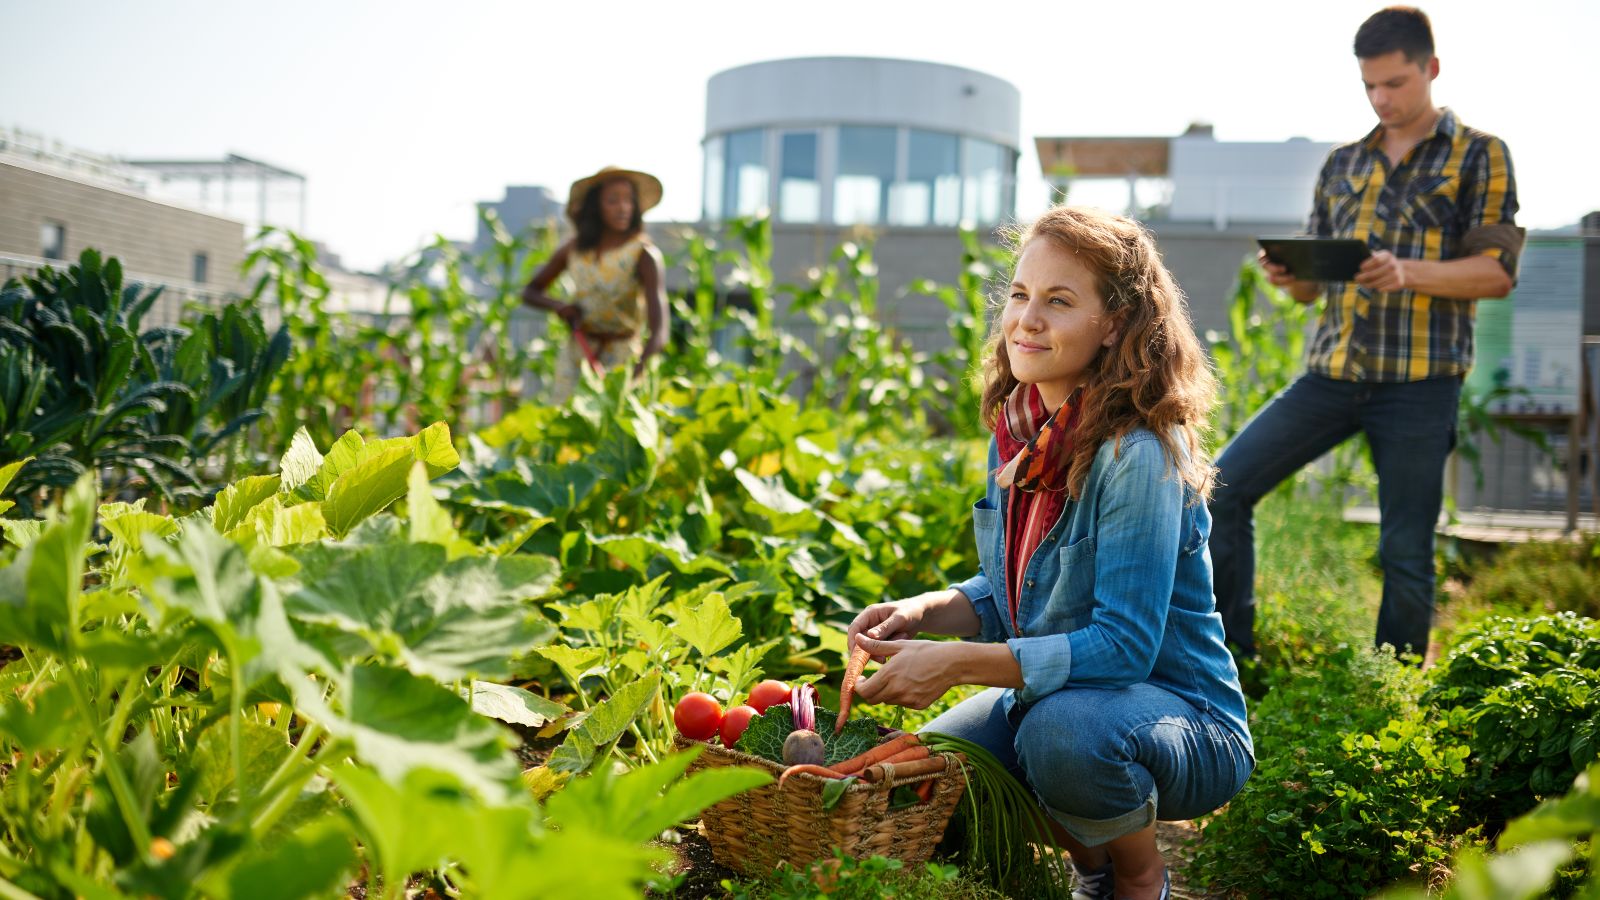 Eine Frau mit langen roteh Haaren hockt vor einem Gemüsebeet und hält einen Korb mit verschiedenen Gemüsetypen. Im Hintergrund steht ein Mann mit einem Tablet und eine Frau mit einem Sonnenhut.